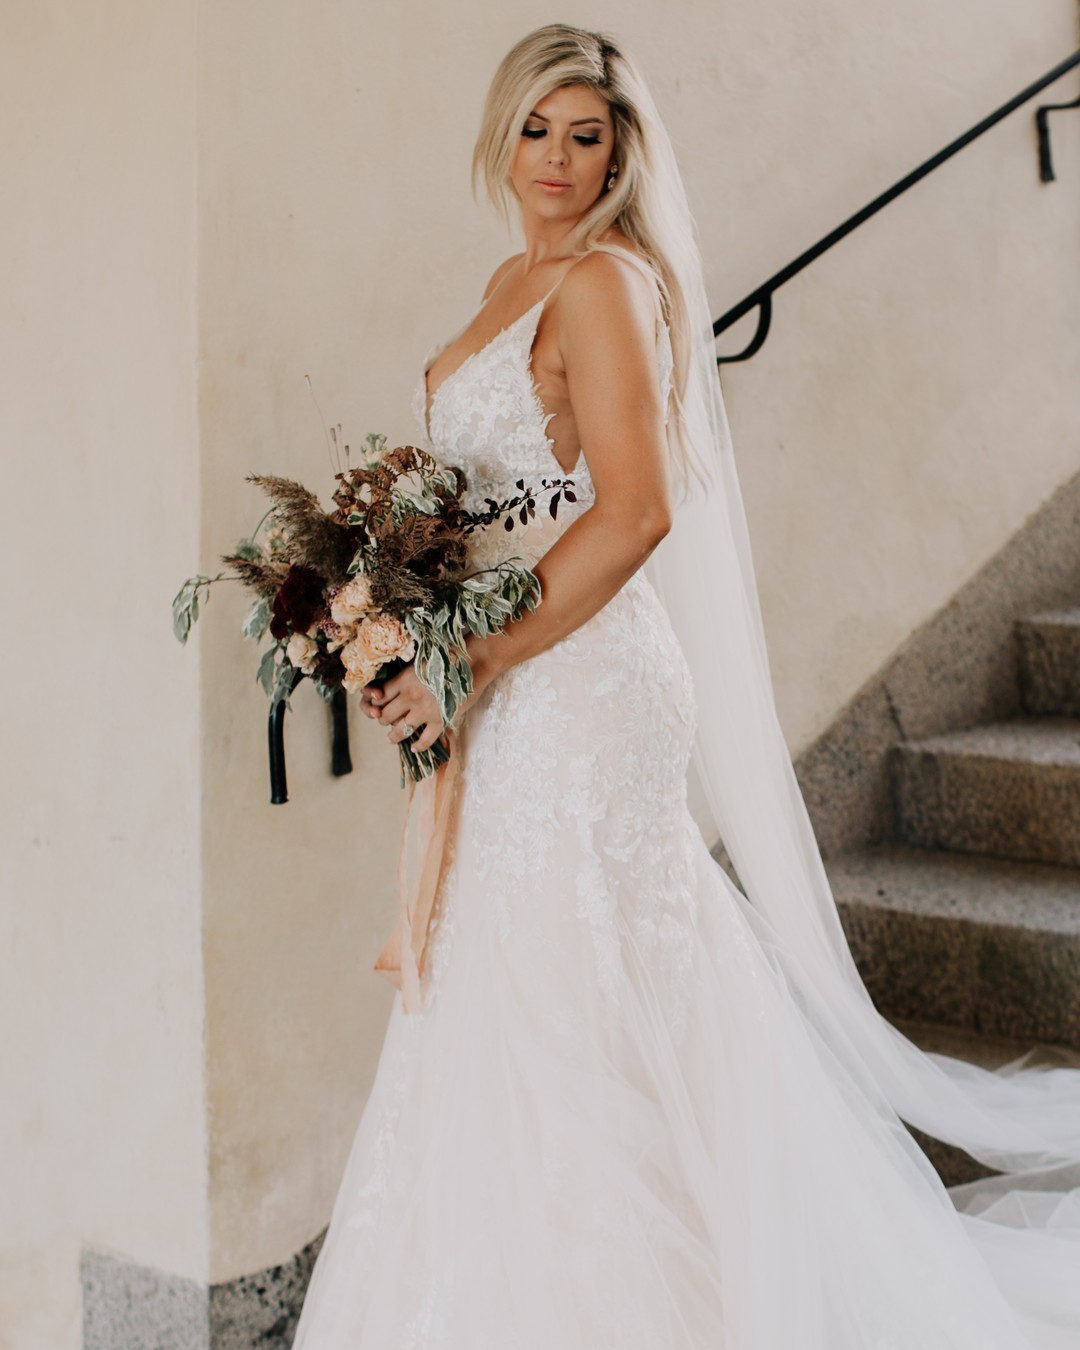 American bride in Stockholm - Tyresö Castle